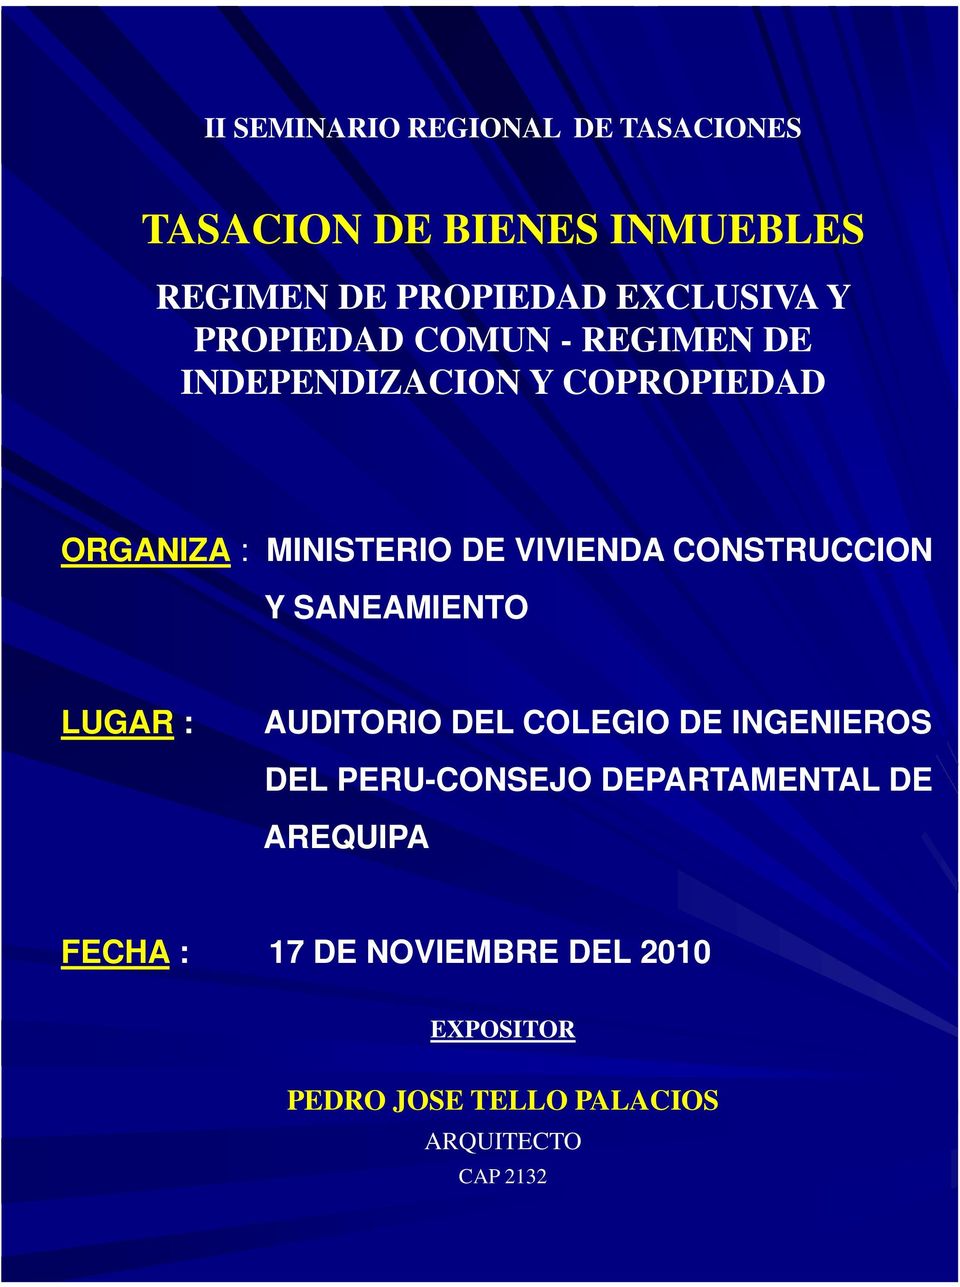 CONSTRUCCION Y SANEAMIENTO LUGAR : AUDITORIO DEL COLEGIO DE INGENIEROS DEL PERU-CONSEJO